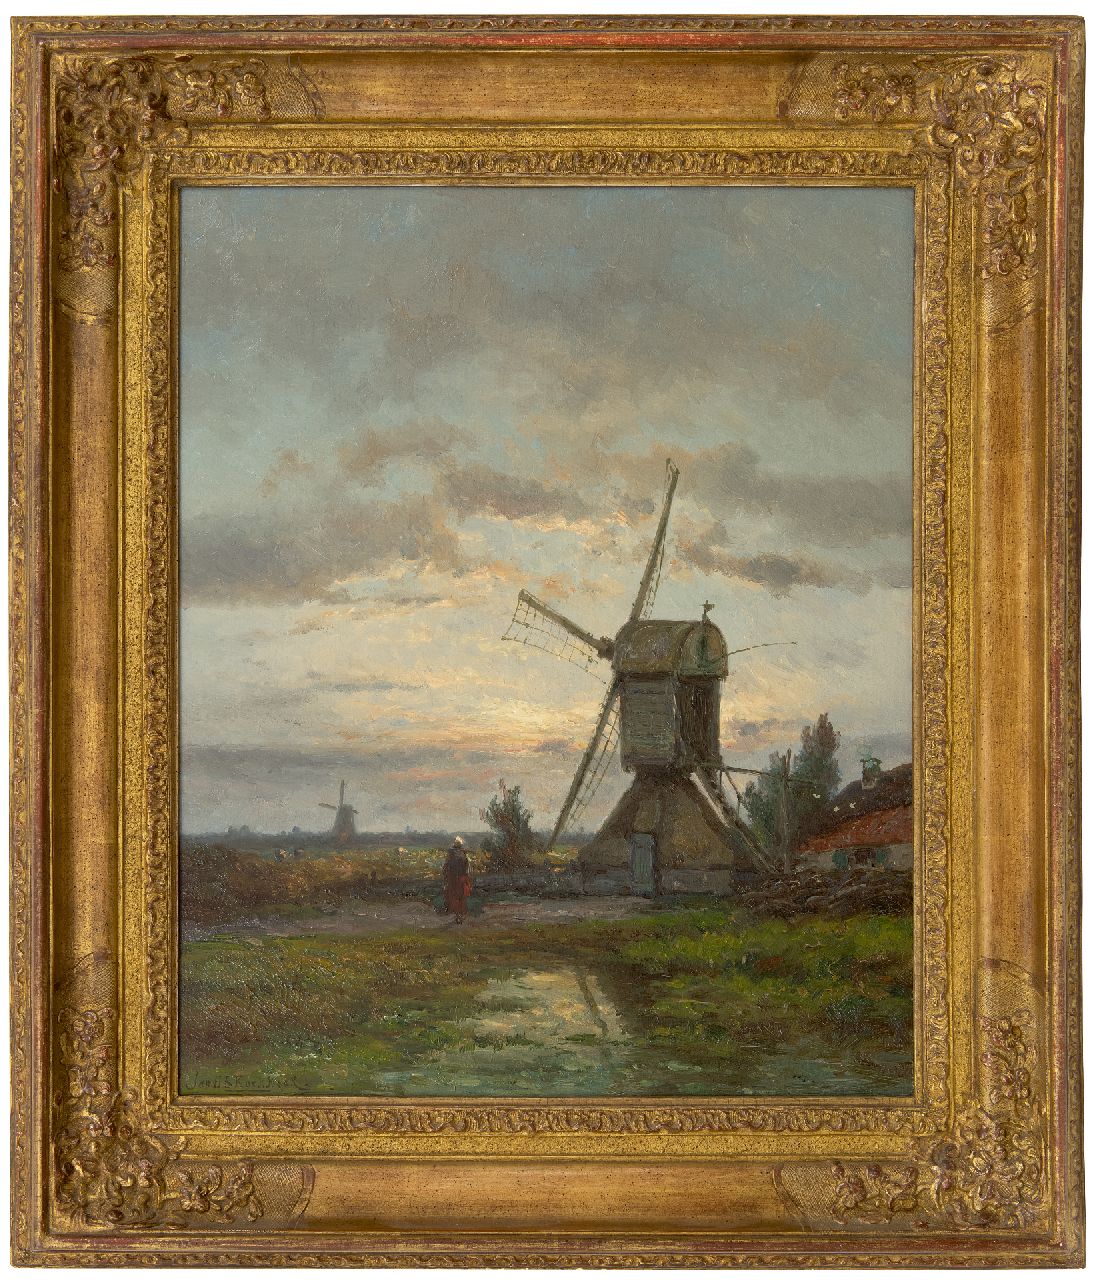 Koekkoek J.H.B.  | Johannes Hermanus Barend 'Jan H.B.' Koekkoek | Paintings offered for sale | Flour mill De Lelie near Kortenhoef, oil on panel 56.0 x 45.5 cm, signed l.l.